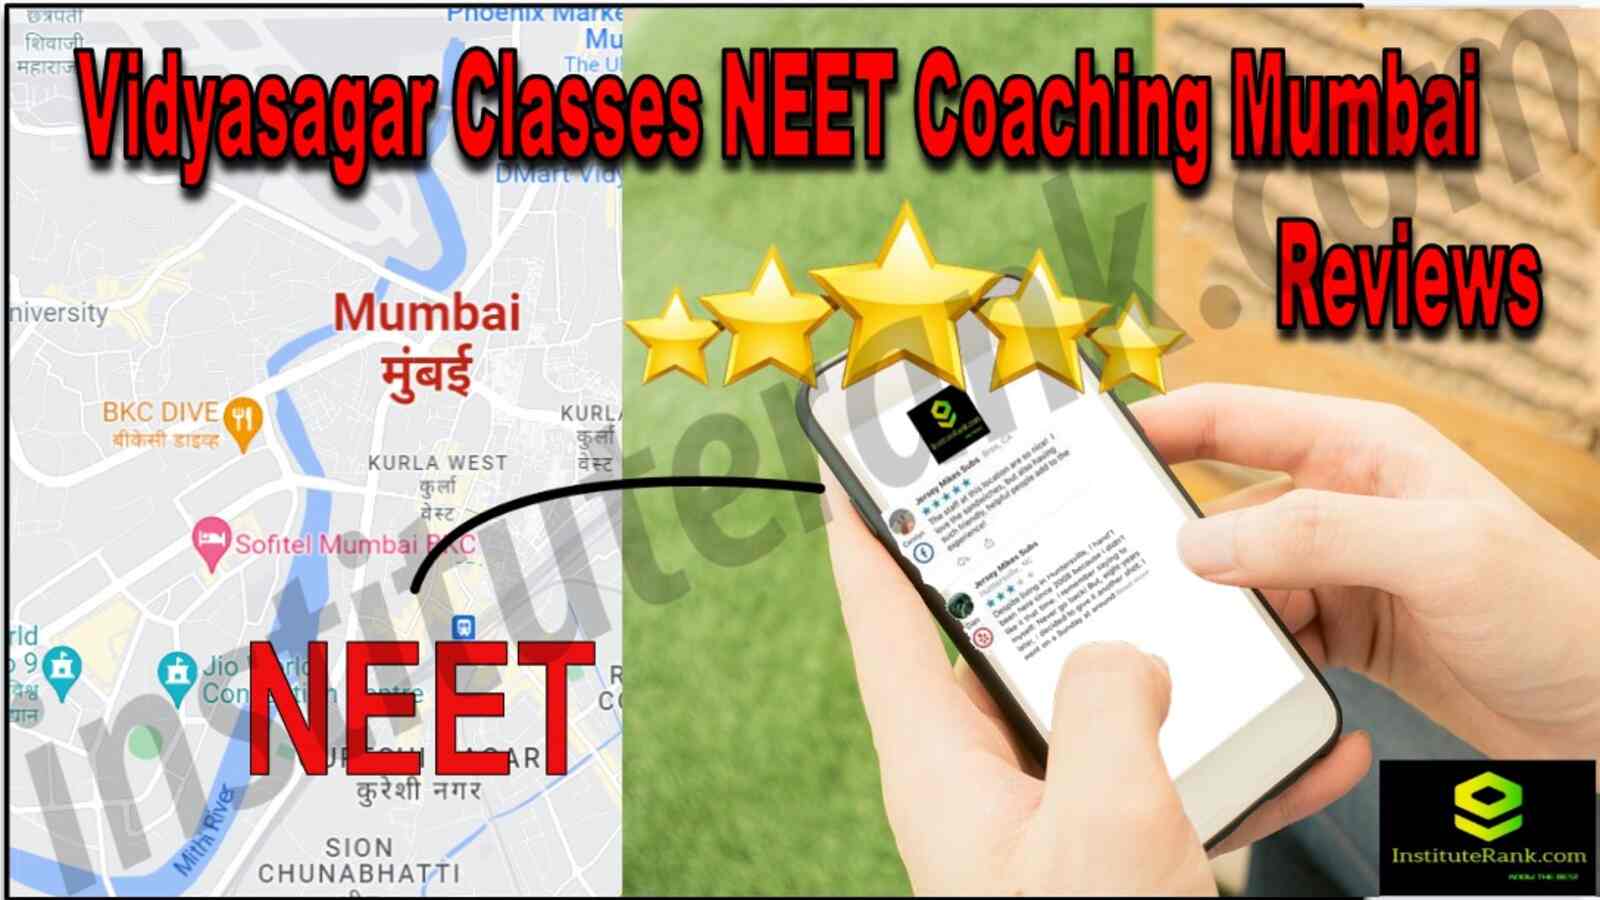 Vidyasagar Classes NEET Coaching Mumbai Reviews